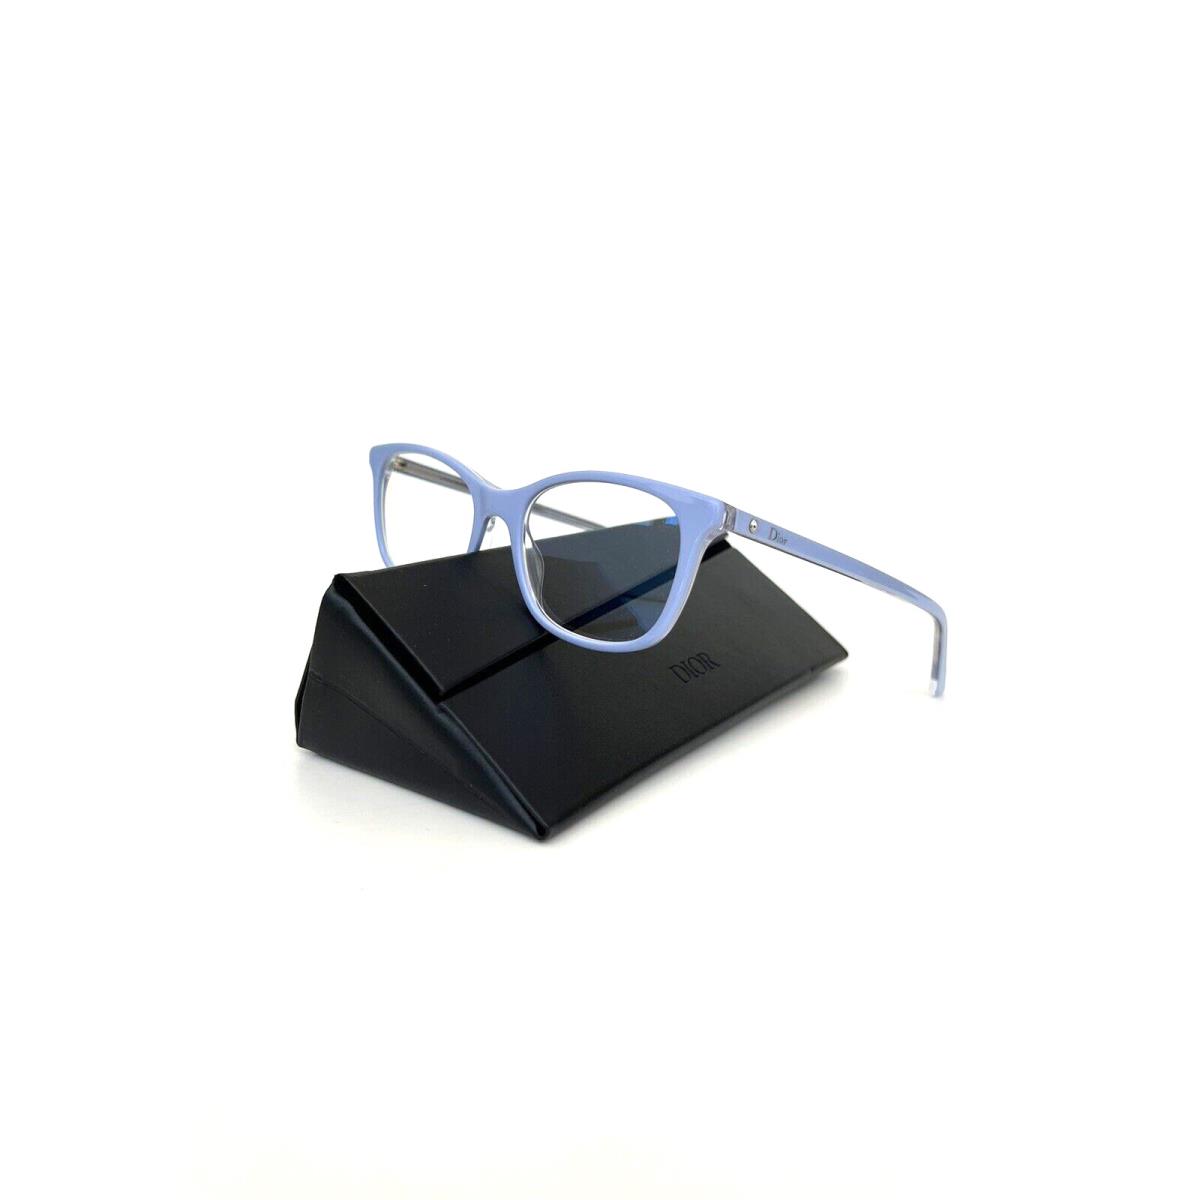 Dior Frames Montaigne N18 50 18 140 Light Blue Eyeglasses Women s Frames